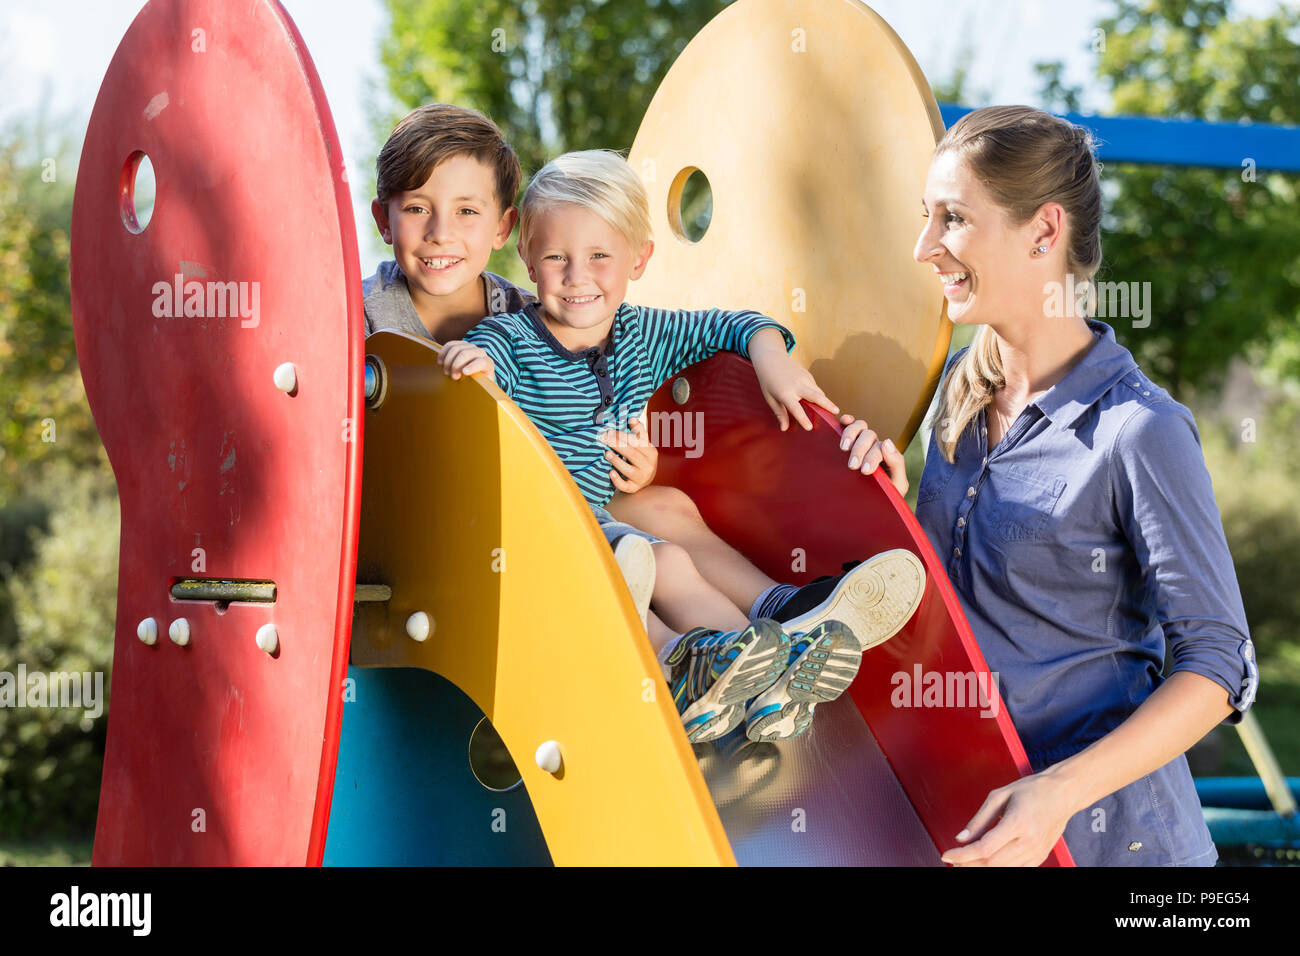 Family playing on adventure playground, children chuting chute Stock Photo